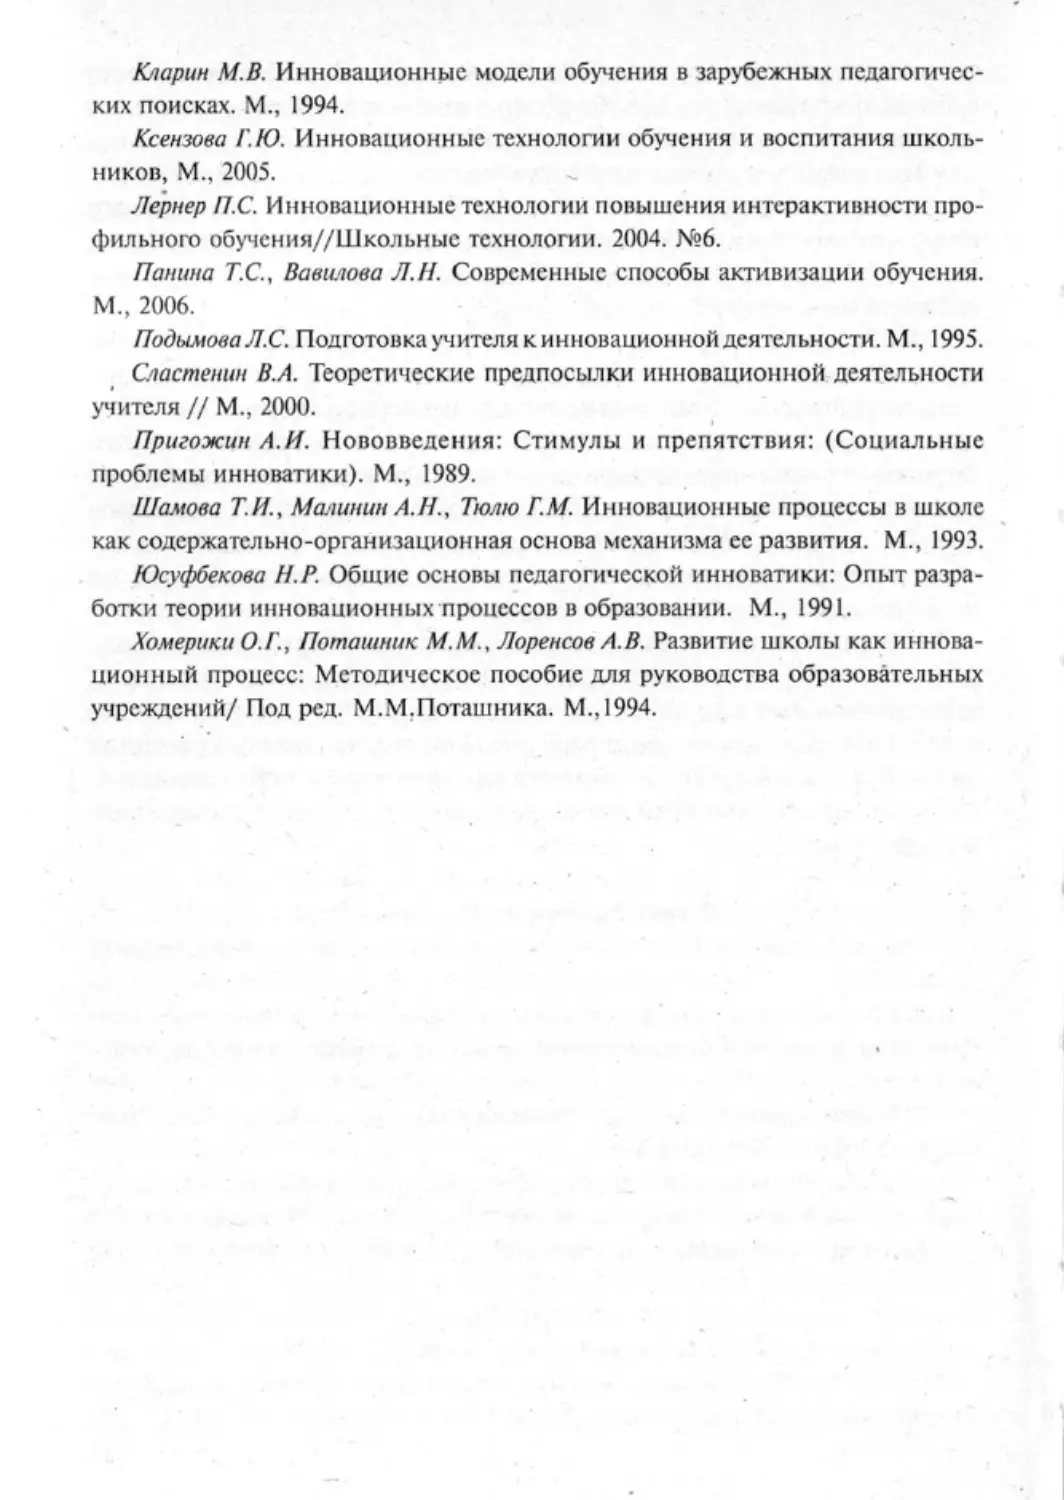 Загрекова Л.В., Николаева В.В - 0243